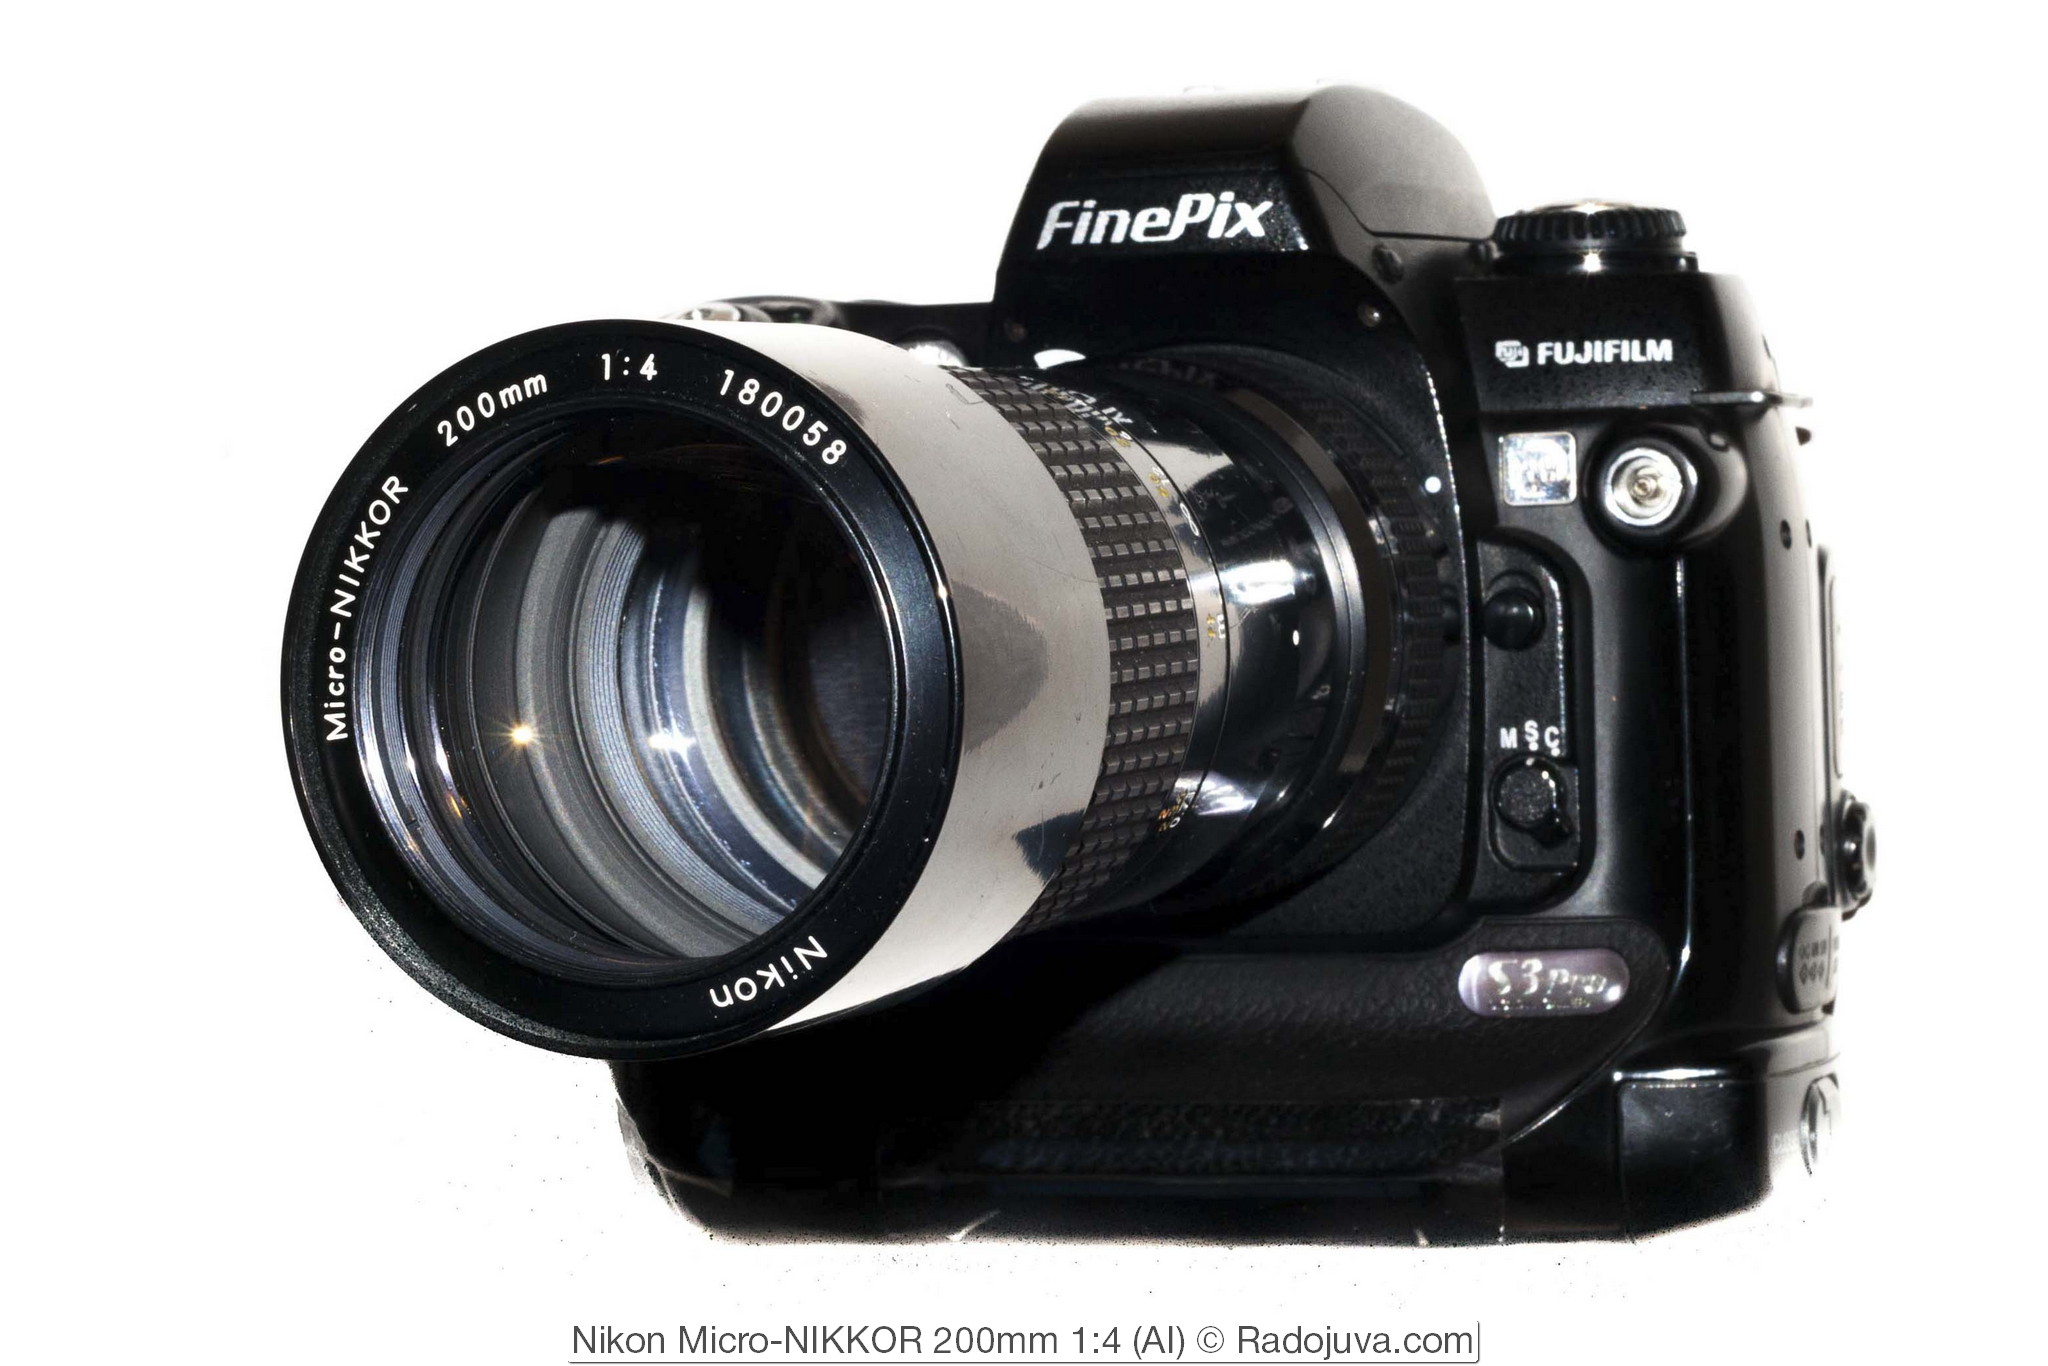 Nikon Micro-NIKKOR 200mm 1:4 (AI)